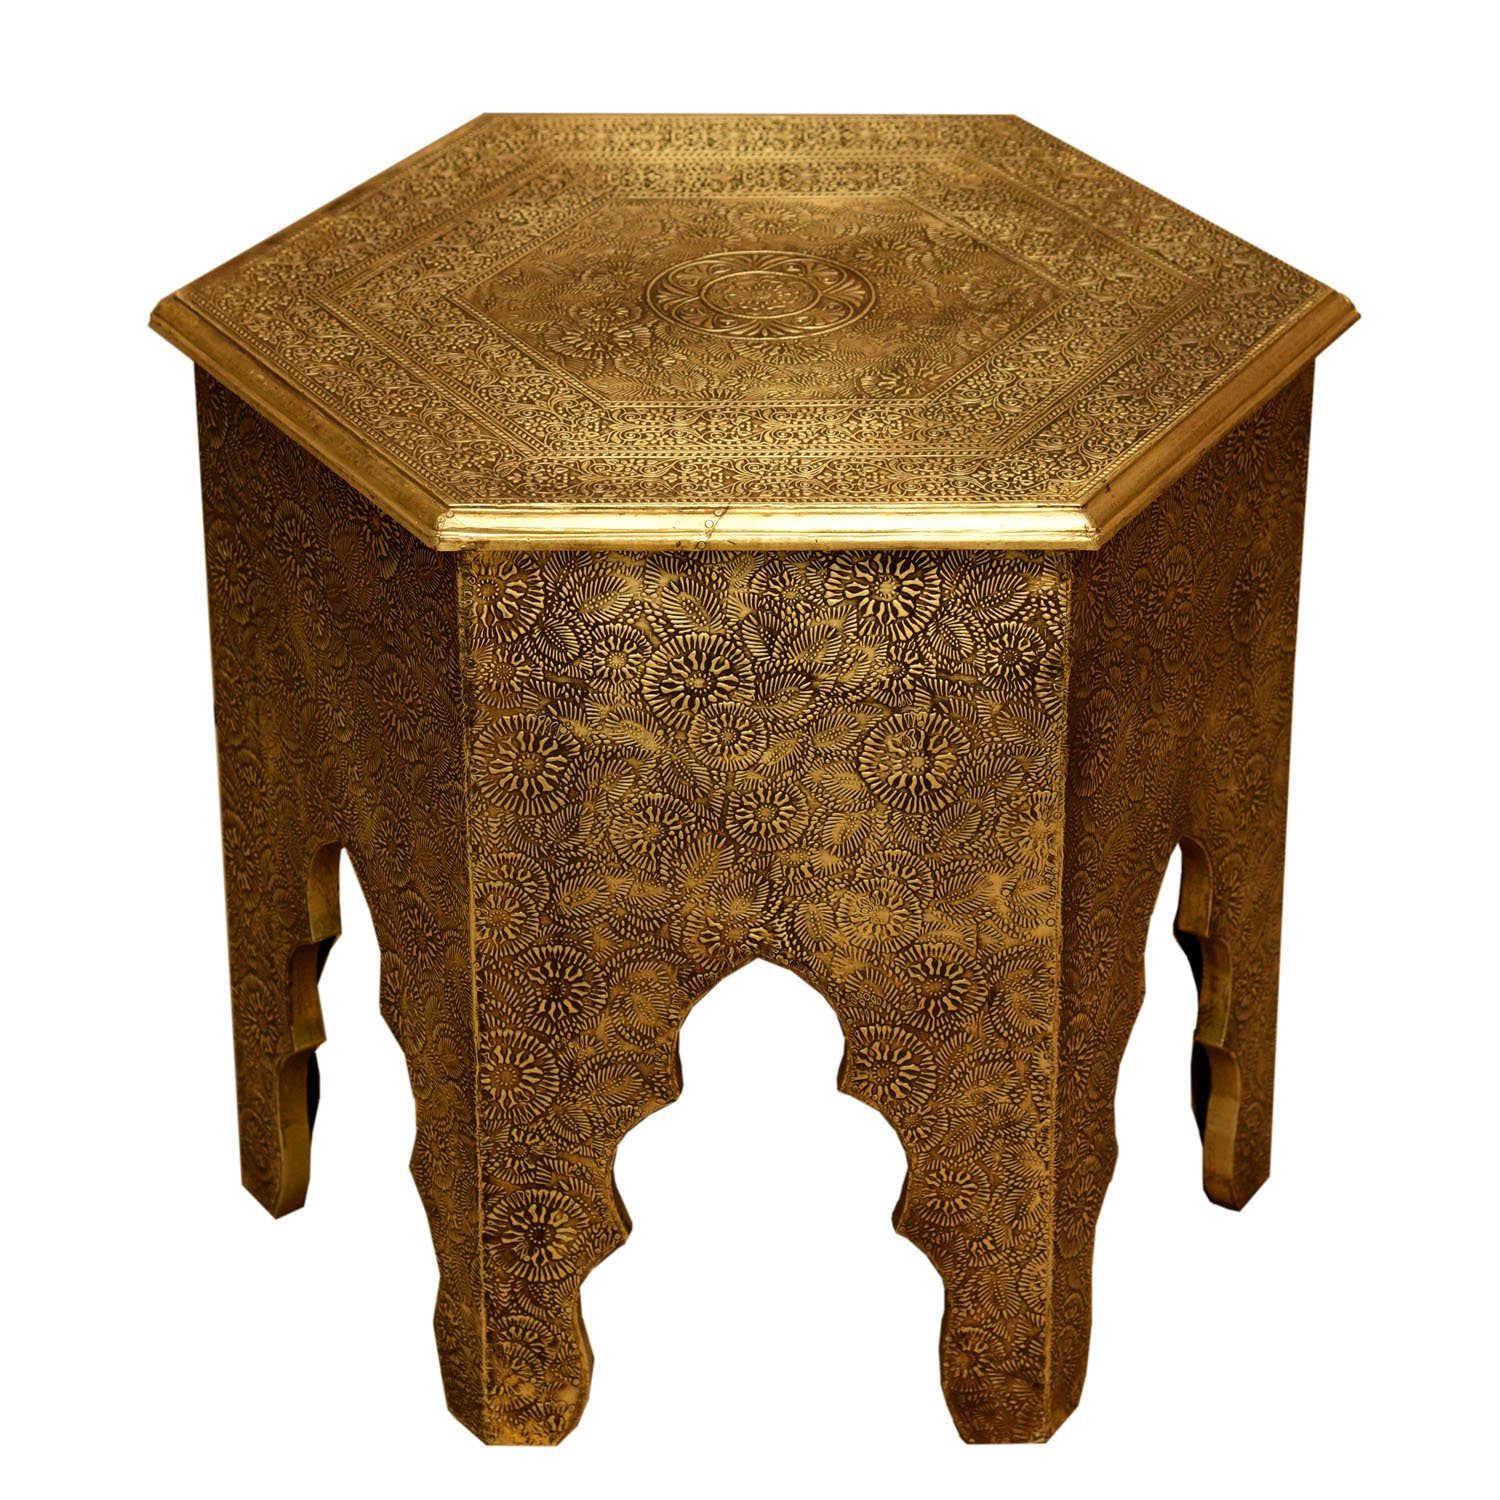 Casa Moro Beistelltisch Orientalischer Couchtisch Targa Höhe Ø 46cm Holz-Tisch  gold komplett mit Messingintarsien verkleidet in Antik-Gold Look,  marokkanischer Sofatisch Tisch sechseckig, MA77-345, Handmade